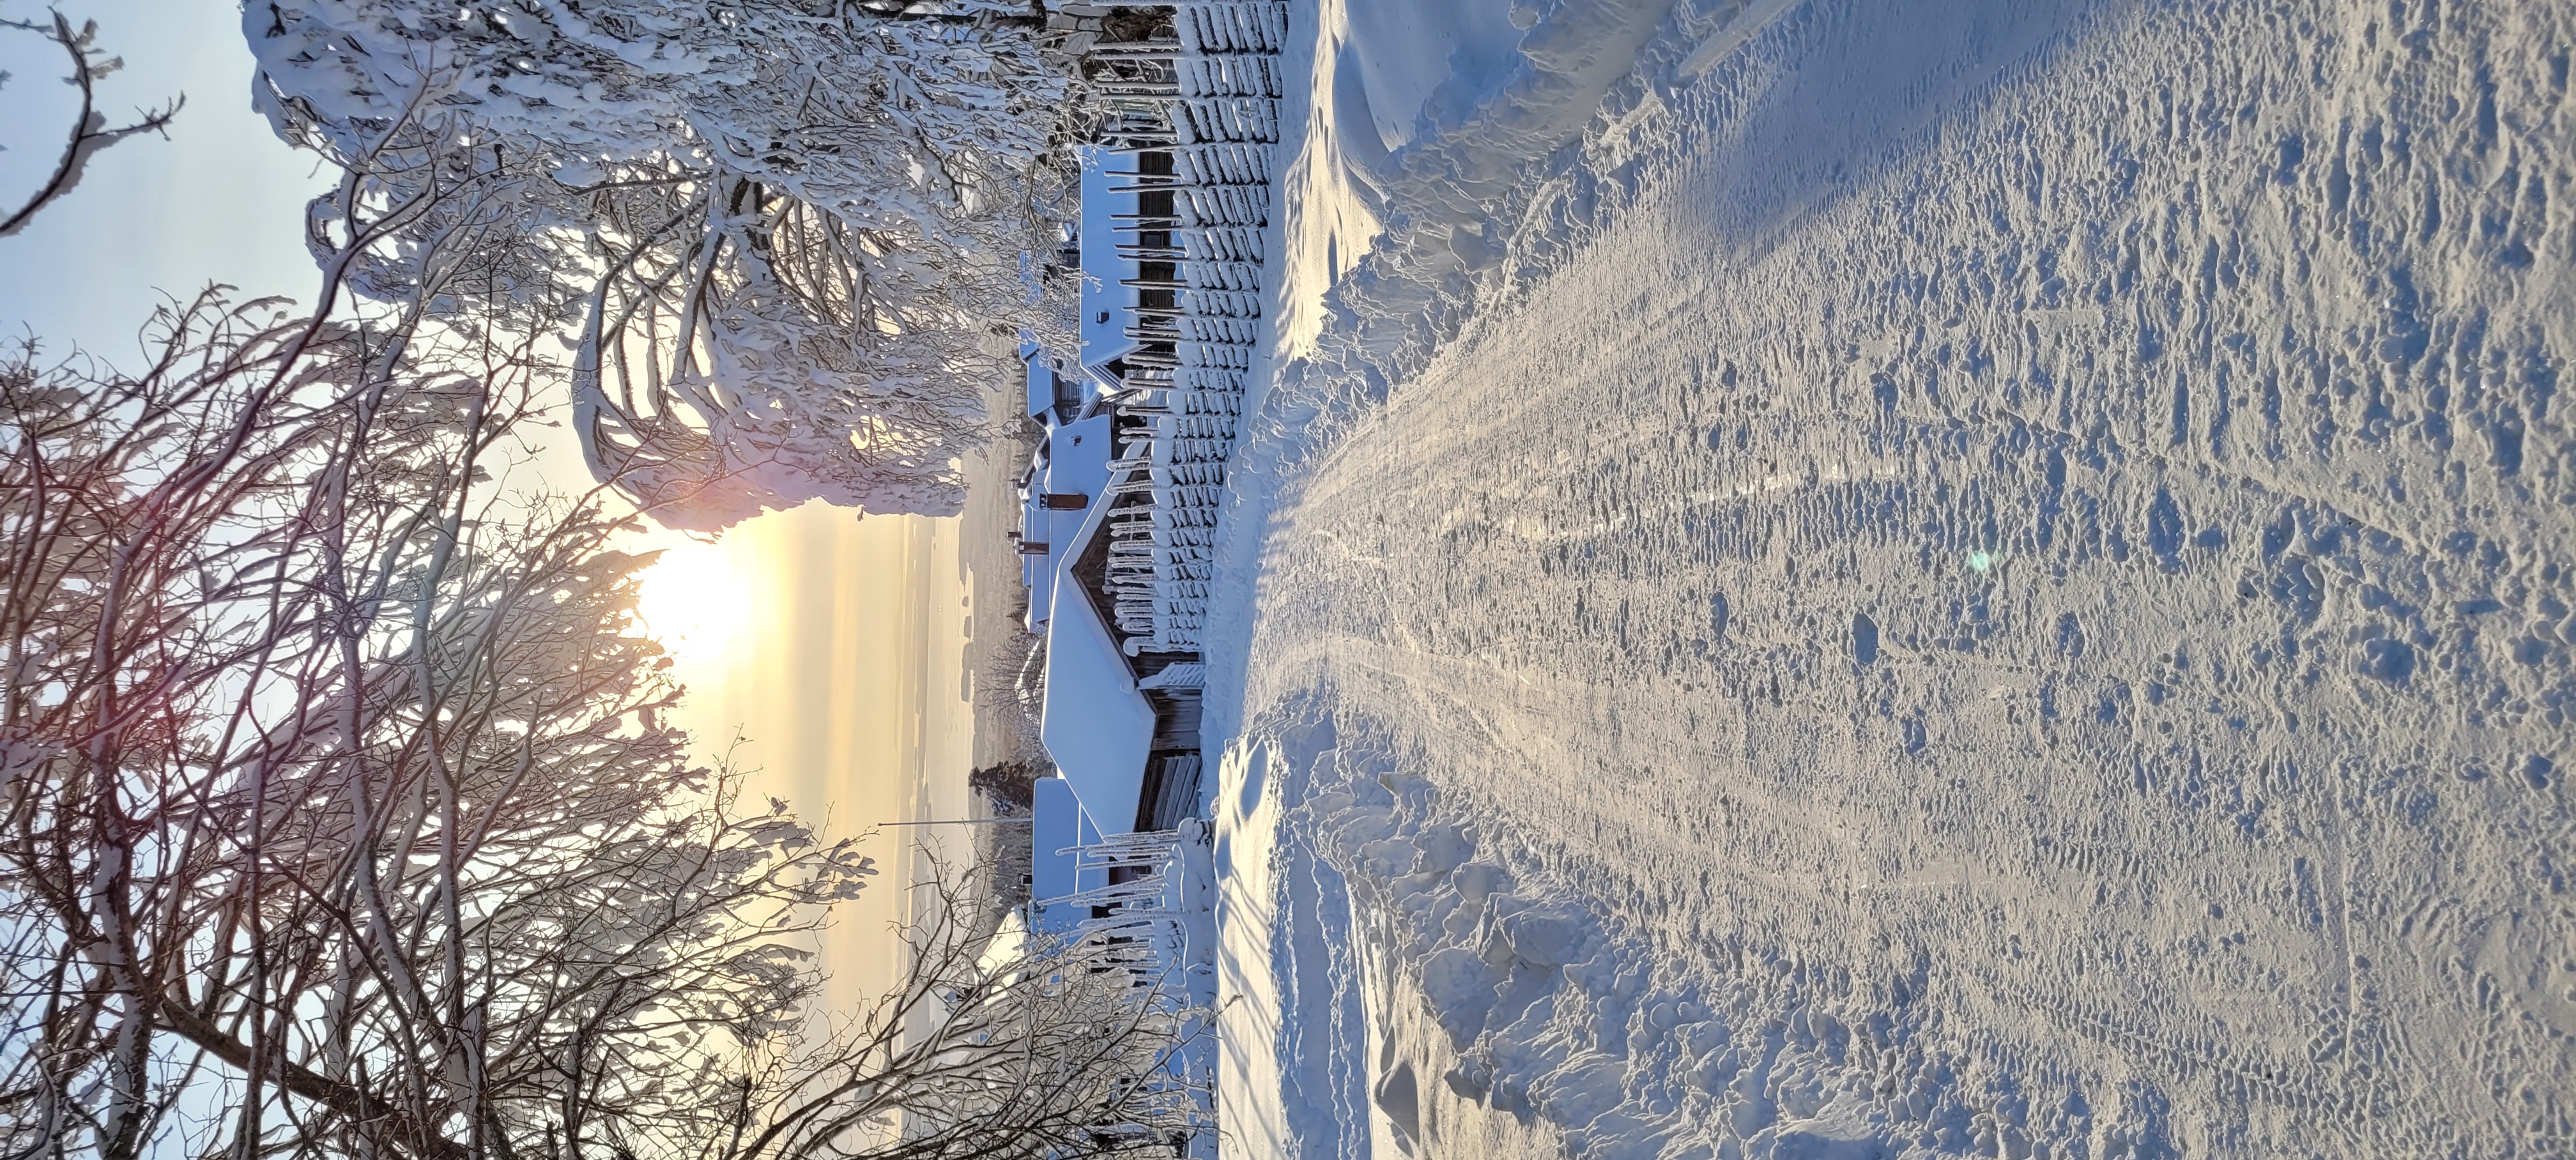 Winter in Dalarna, Sweden